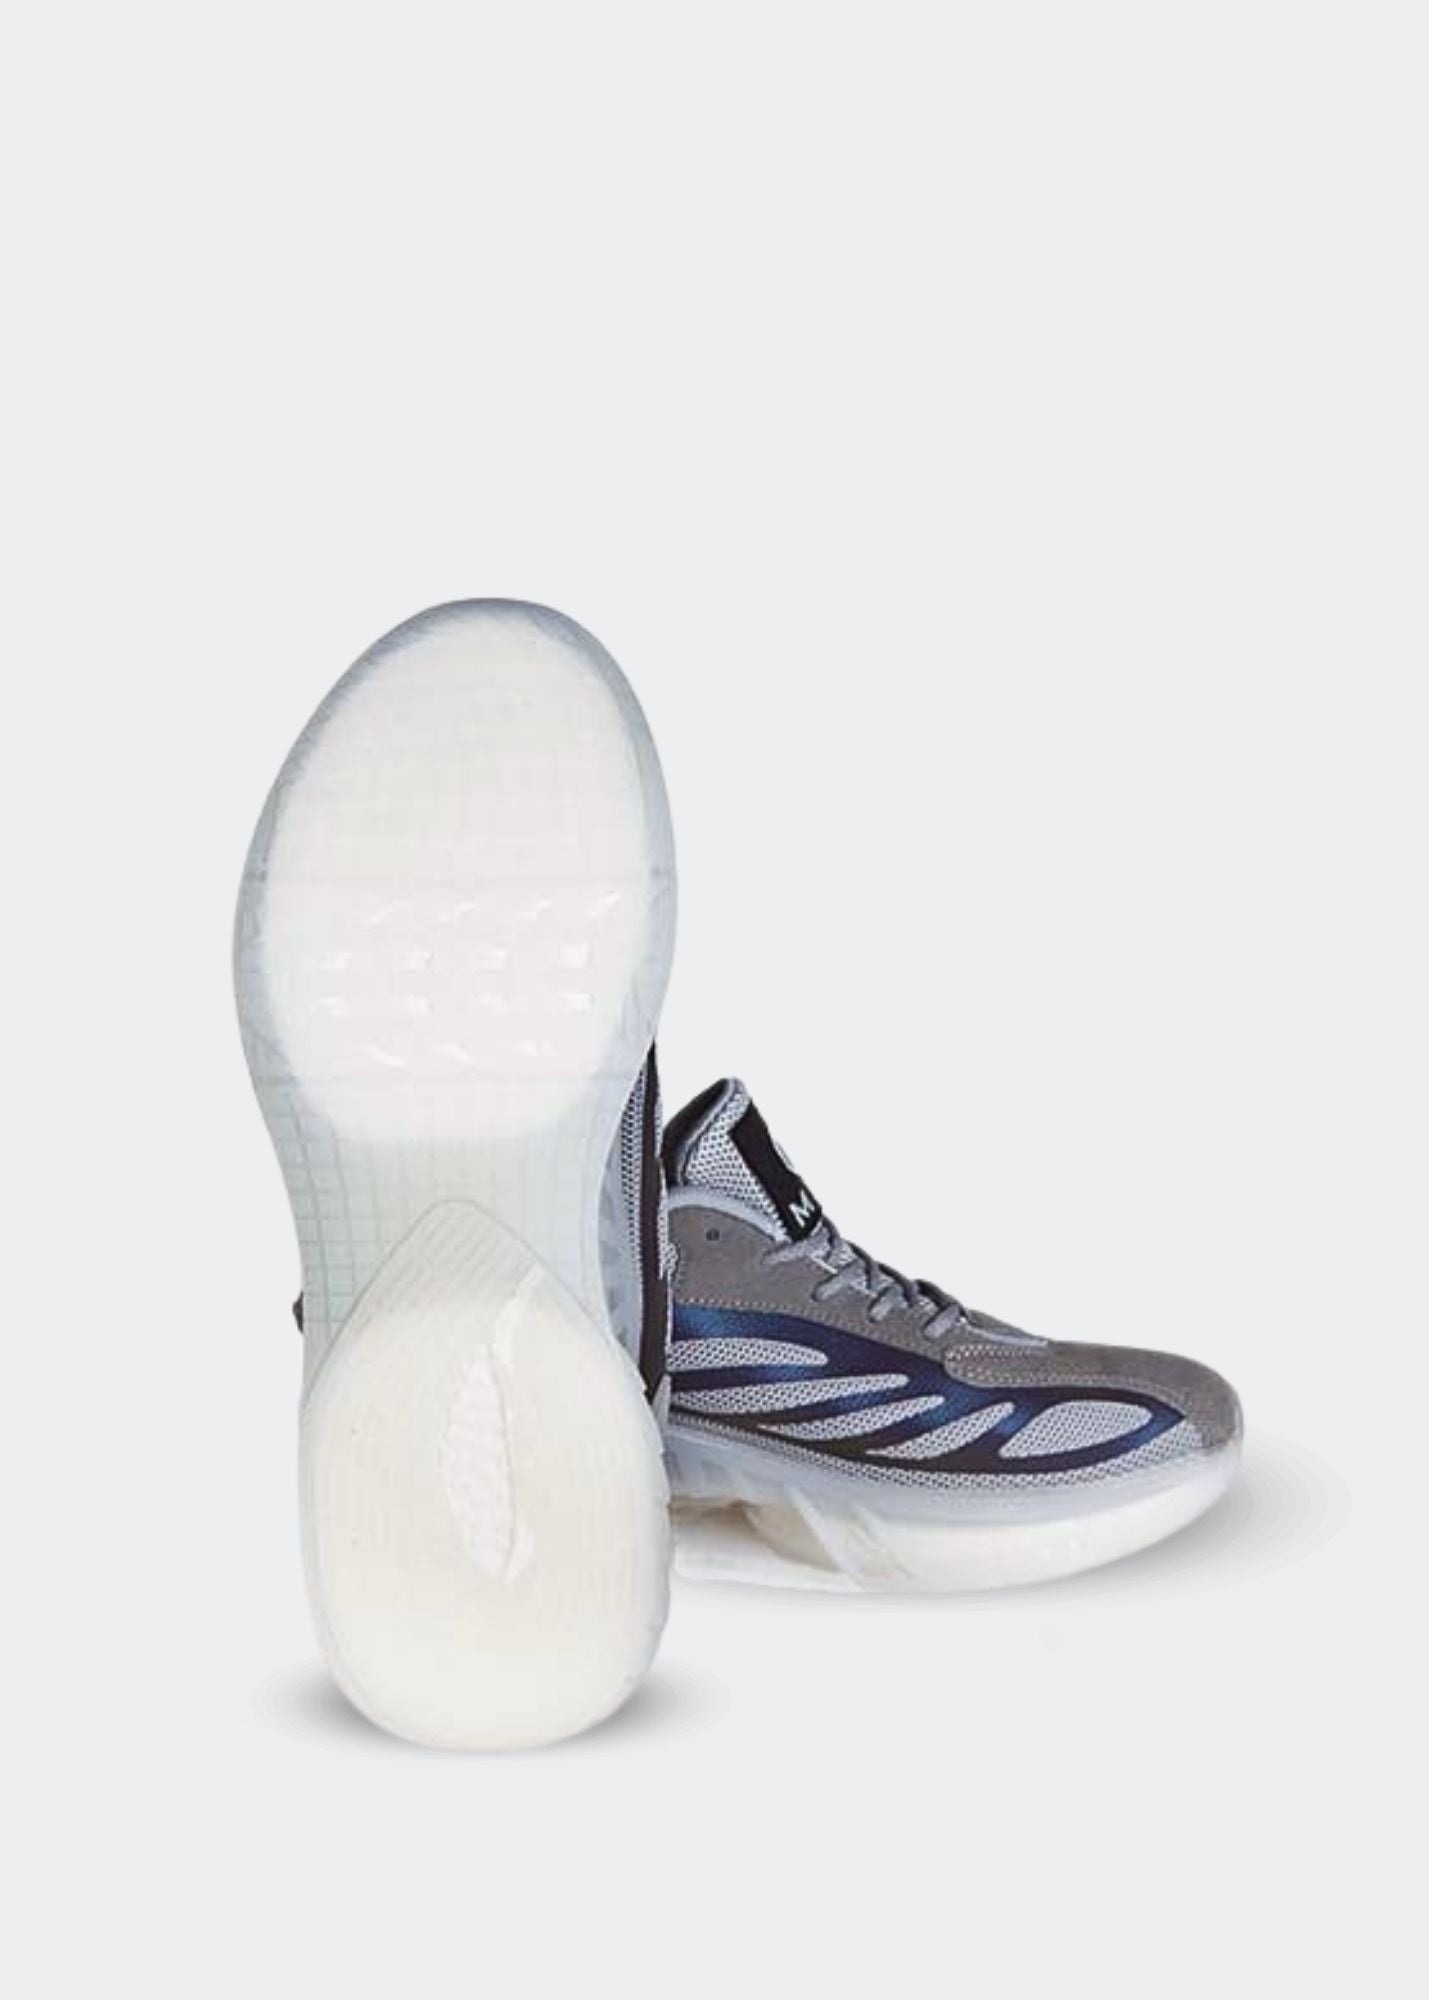 MEM Retro-Reflective Gym Shoes Grey